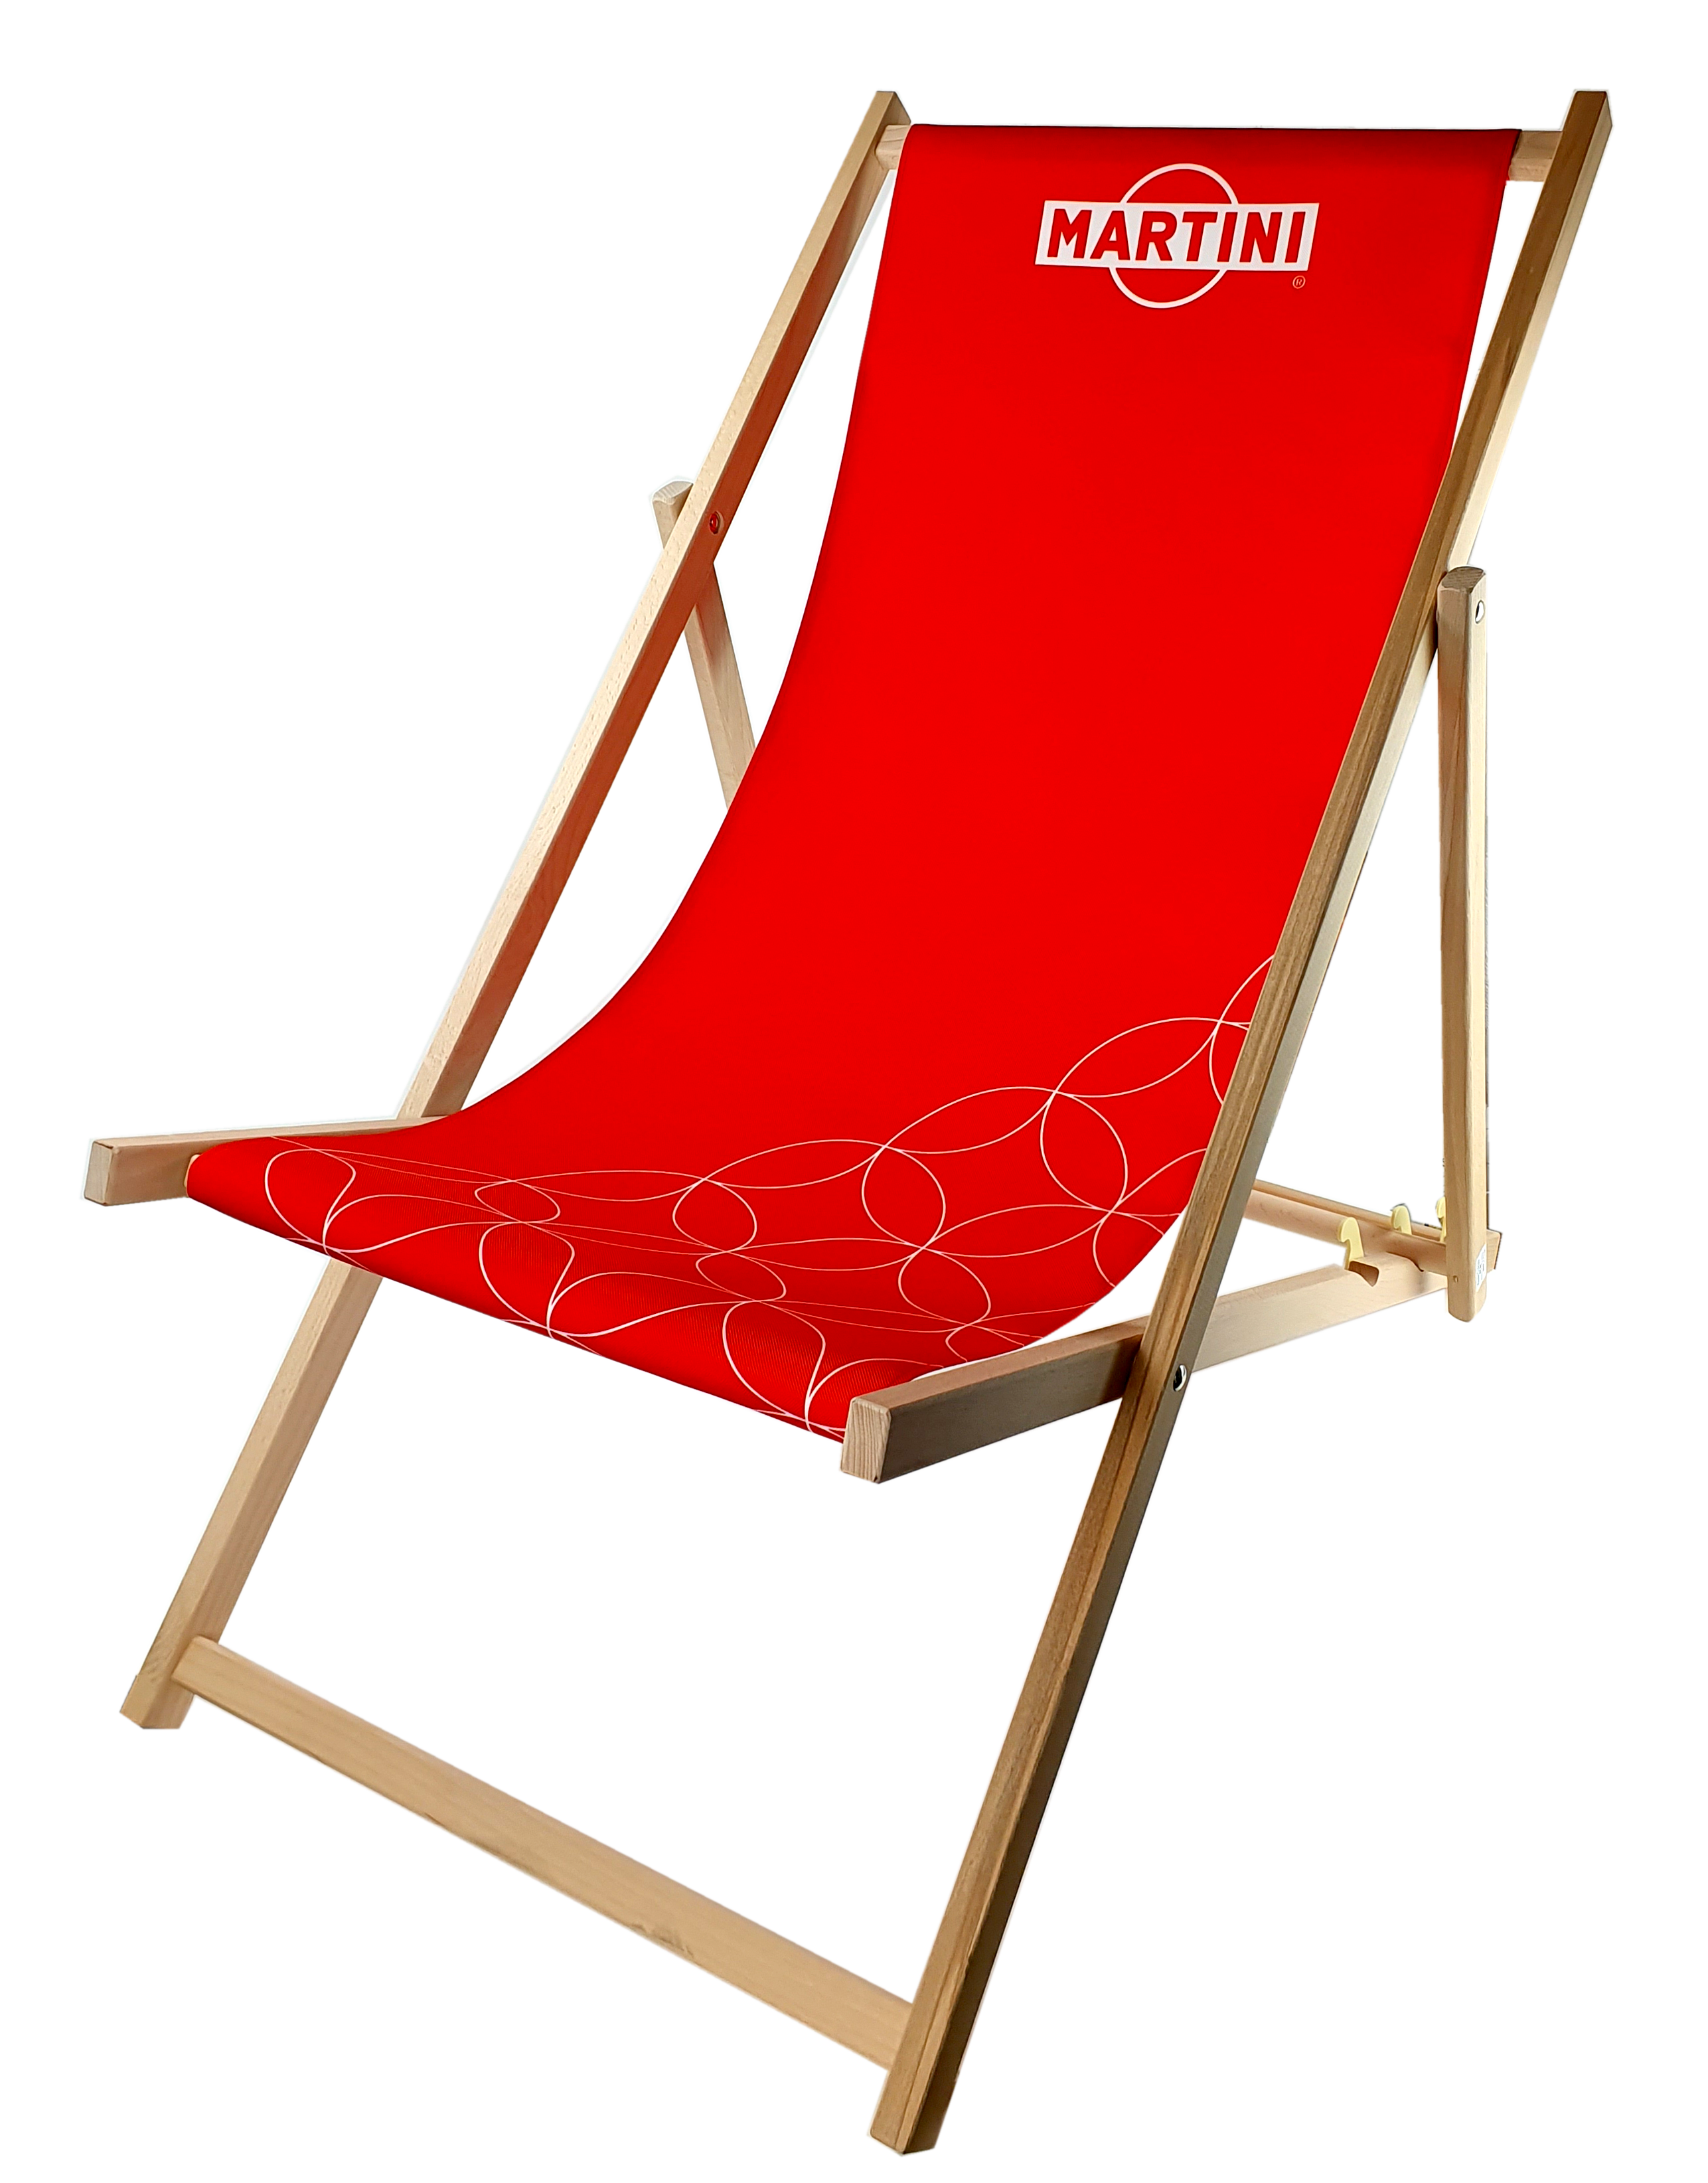 Martini Liegestuhl in Rot aus Buchenholz dreifach verstellbar / Beach Party / Festival